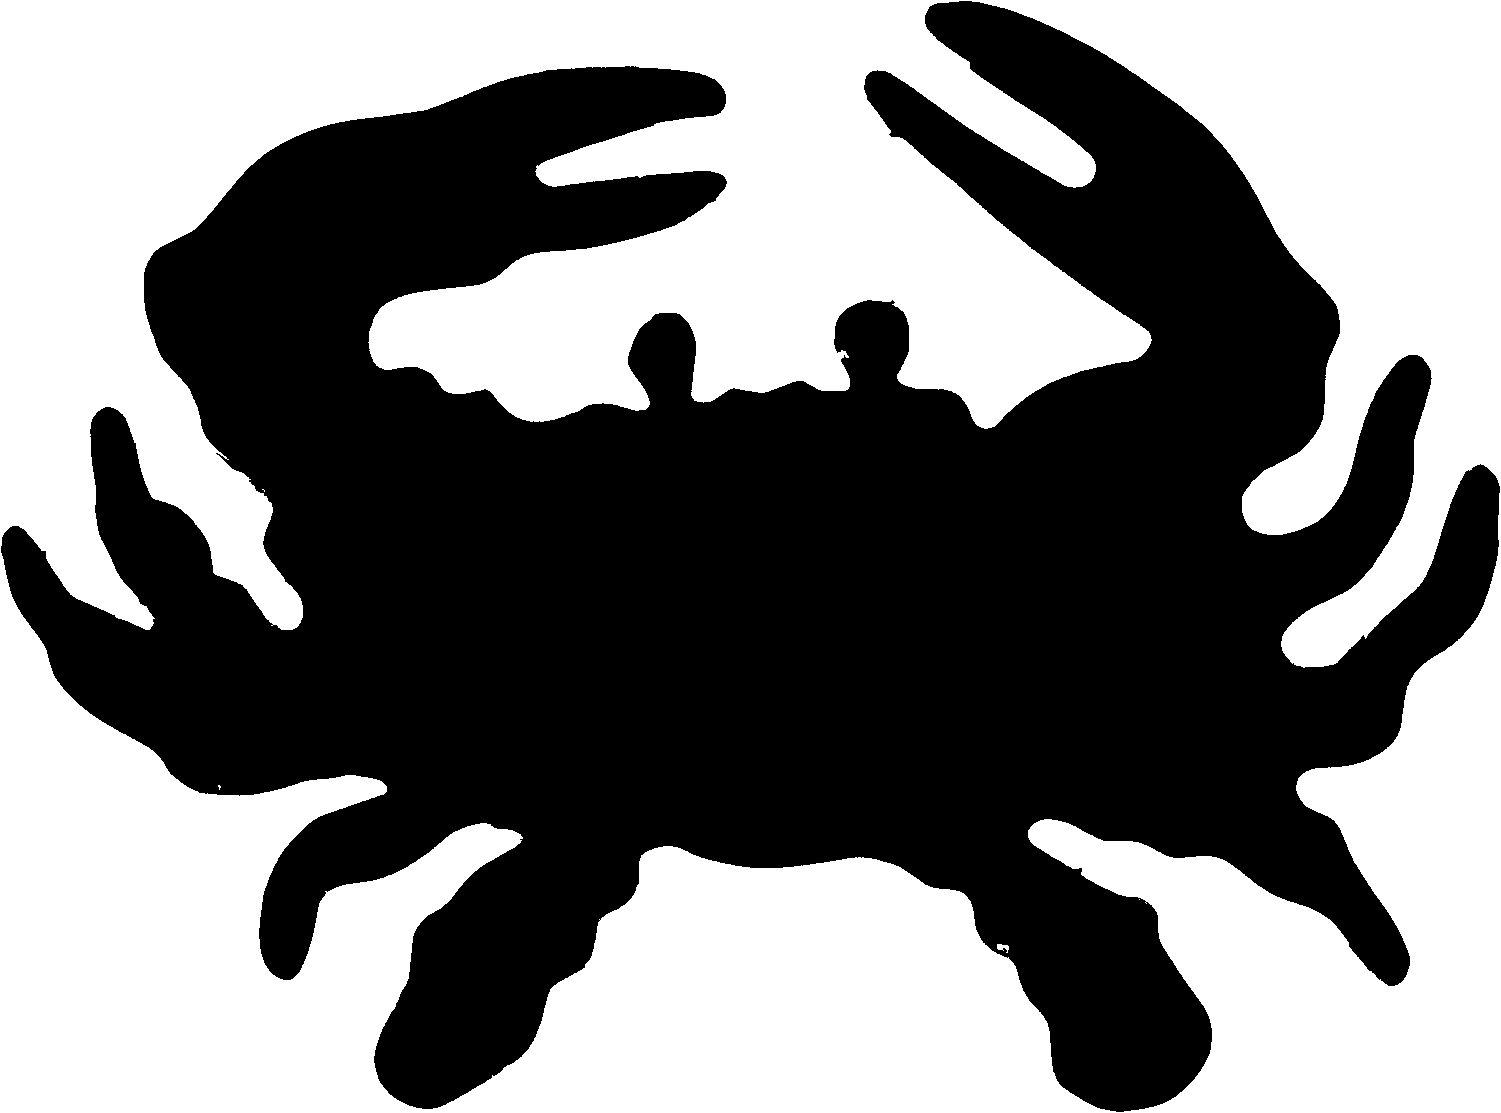 Crab clip art at vector free clipartwiz